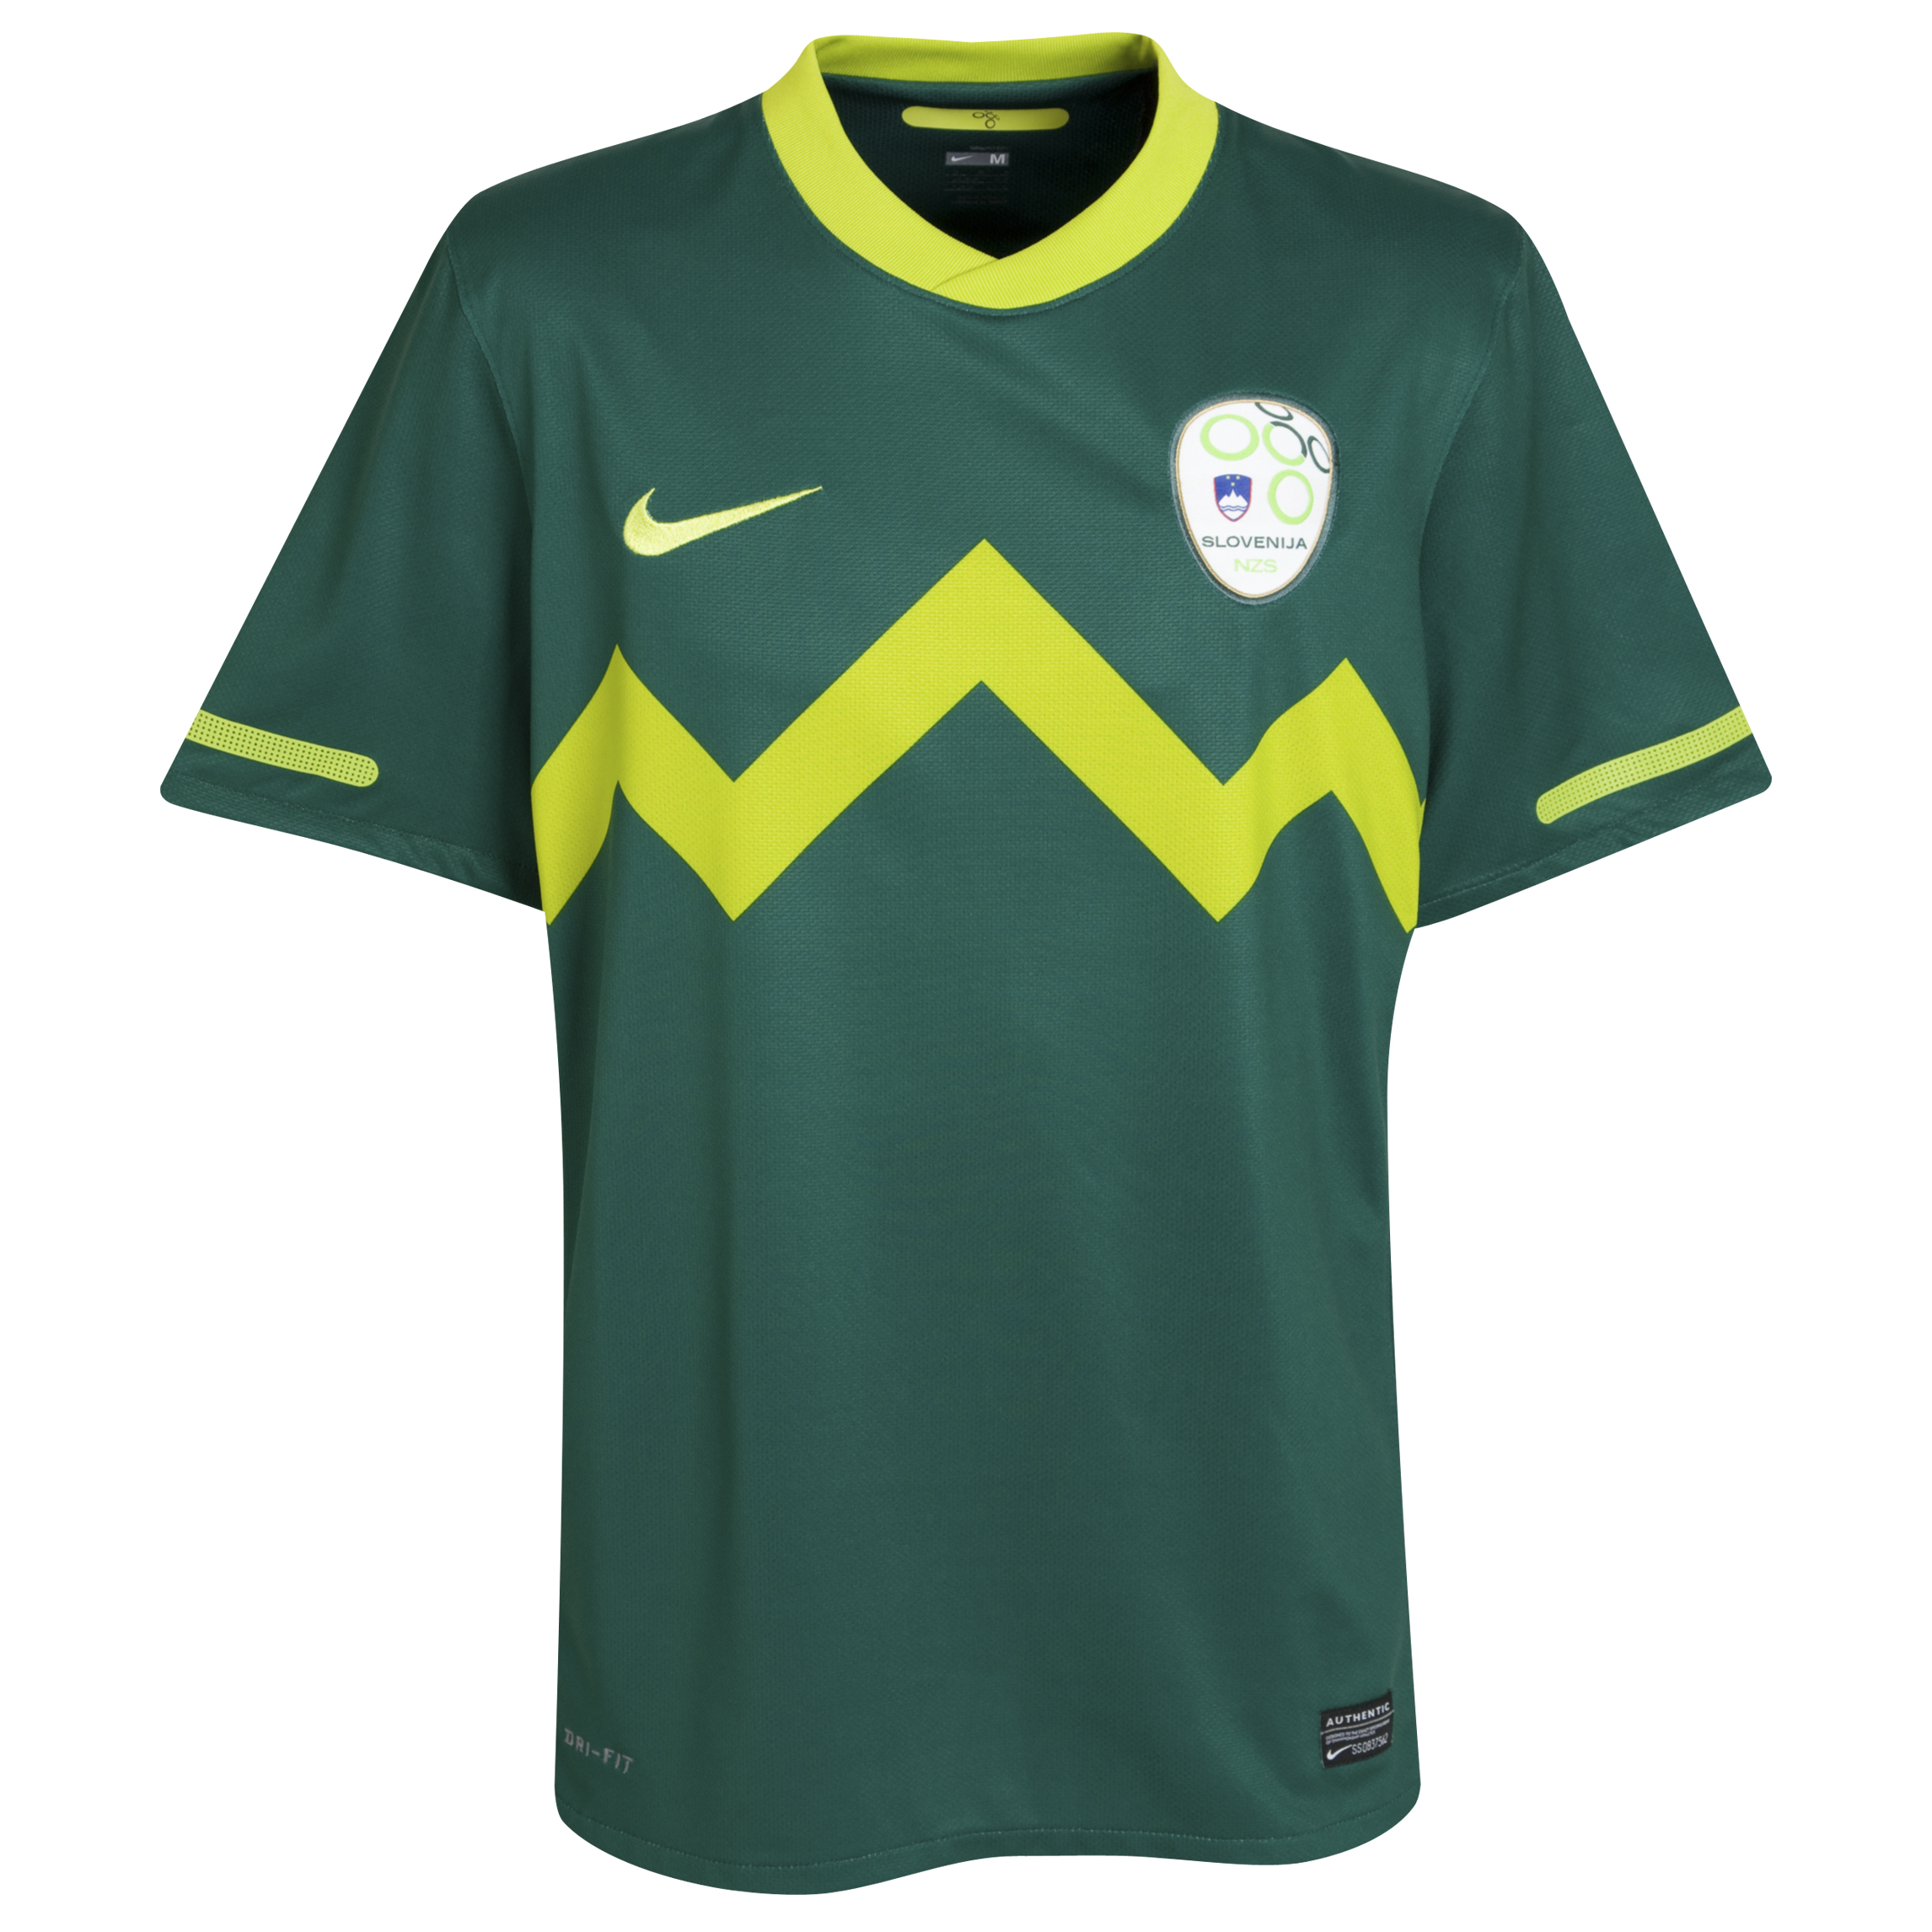 الملابس النهائيه لكأس العالم (2010)بجنوب افريقيا Kb-69731